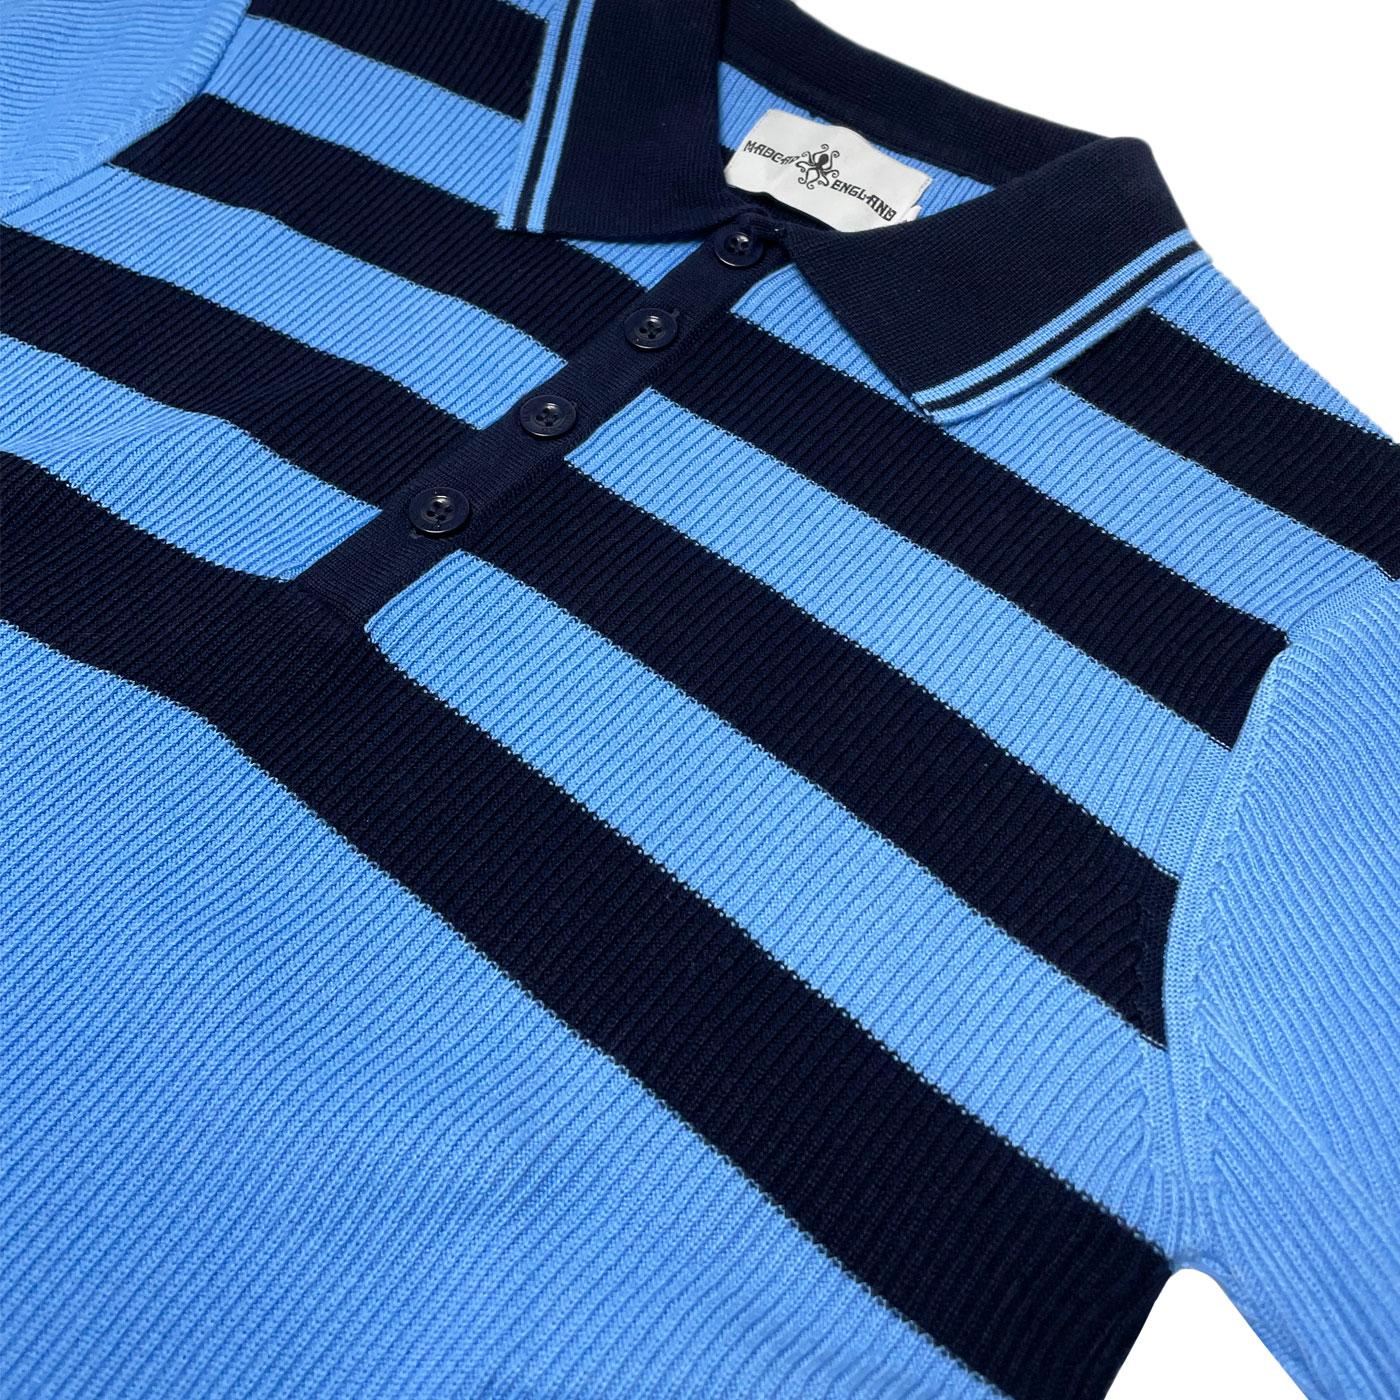 MADCAP ENGLAND Terry Retro Mod Ribbed Stripe Knit Polo Shirt